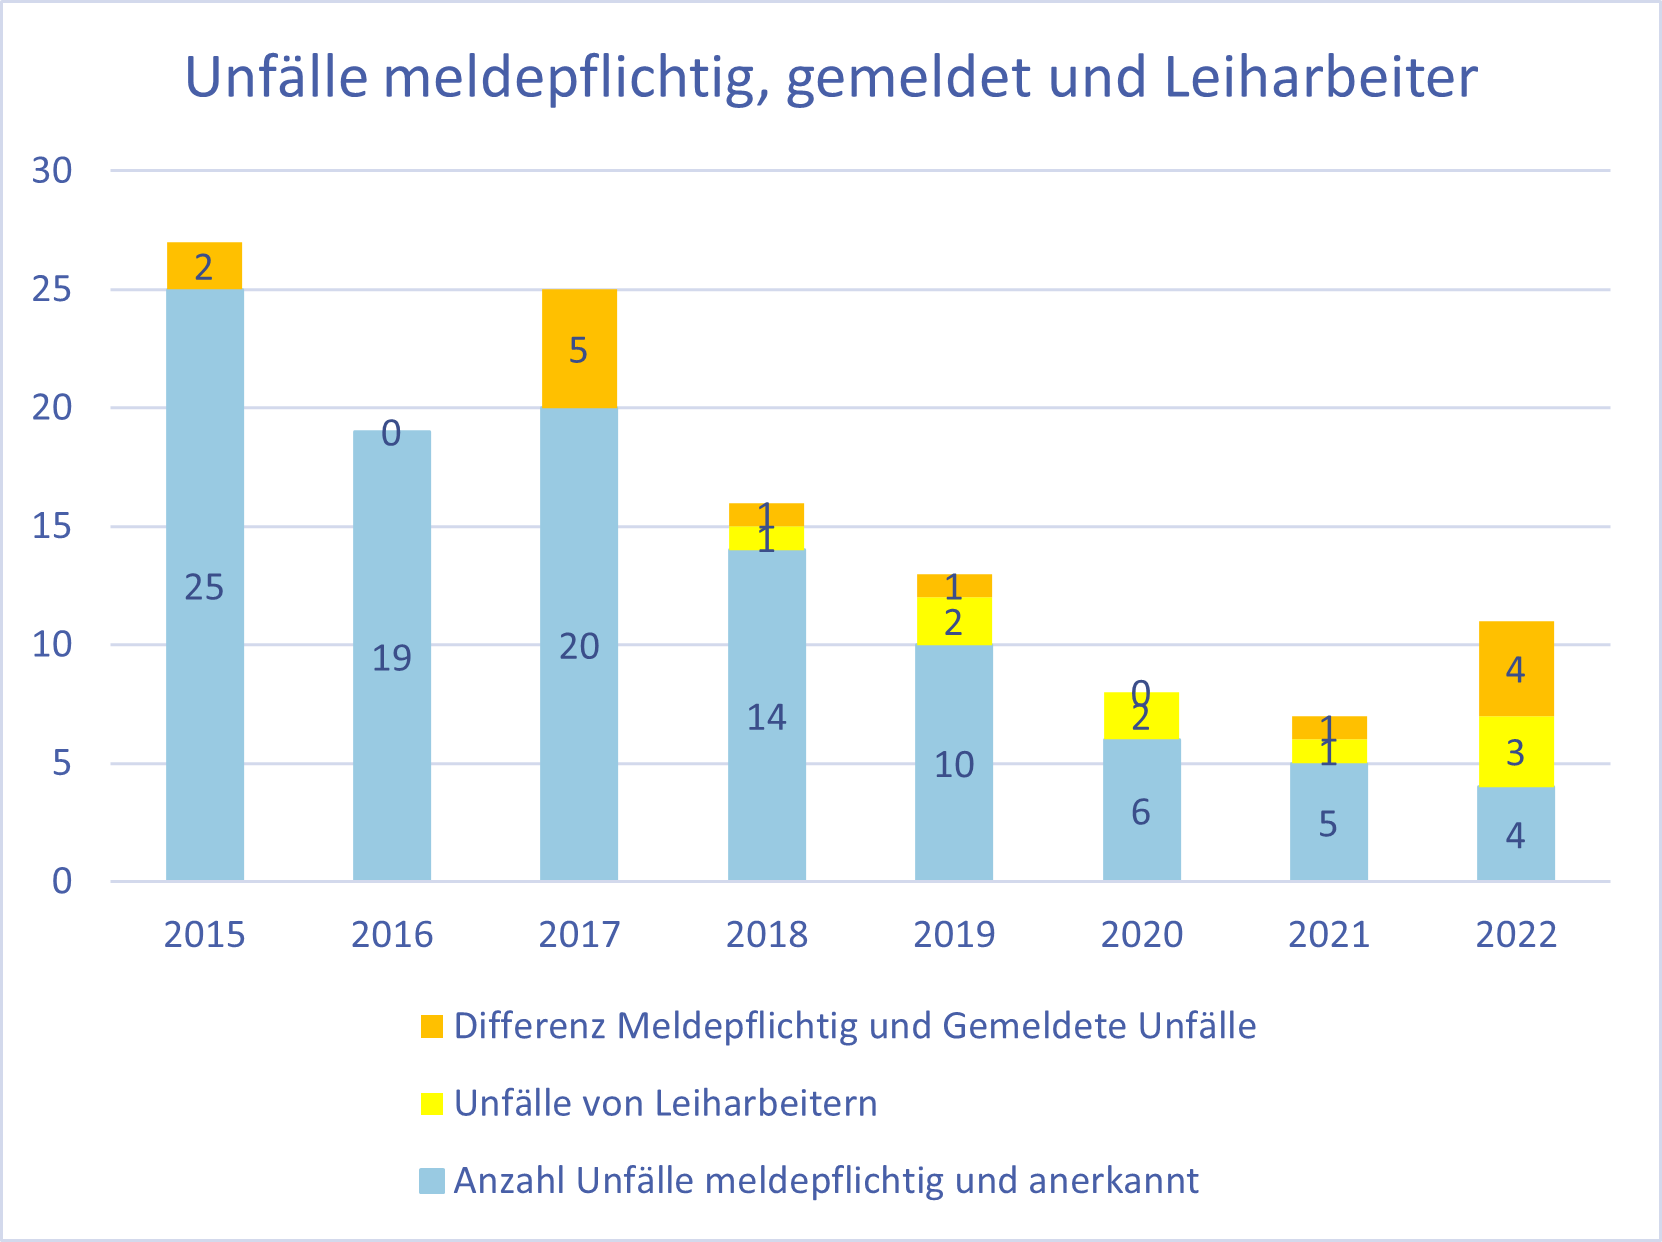 Diagramm "Unfälle meldepflichtig, gemeldet und Leiharbeiter", AUVA-Daten für den Zeitraum 2015 bis 2022.